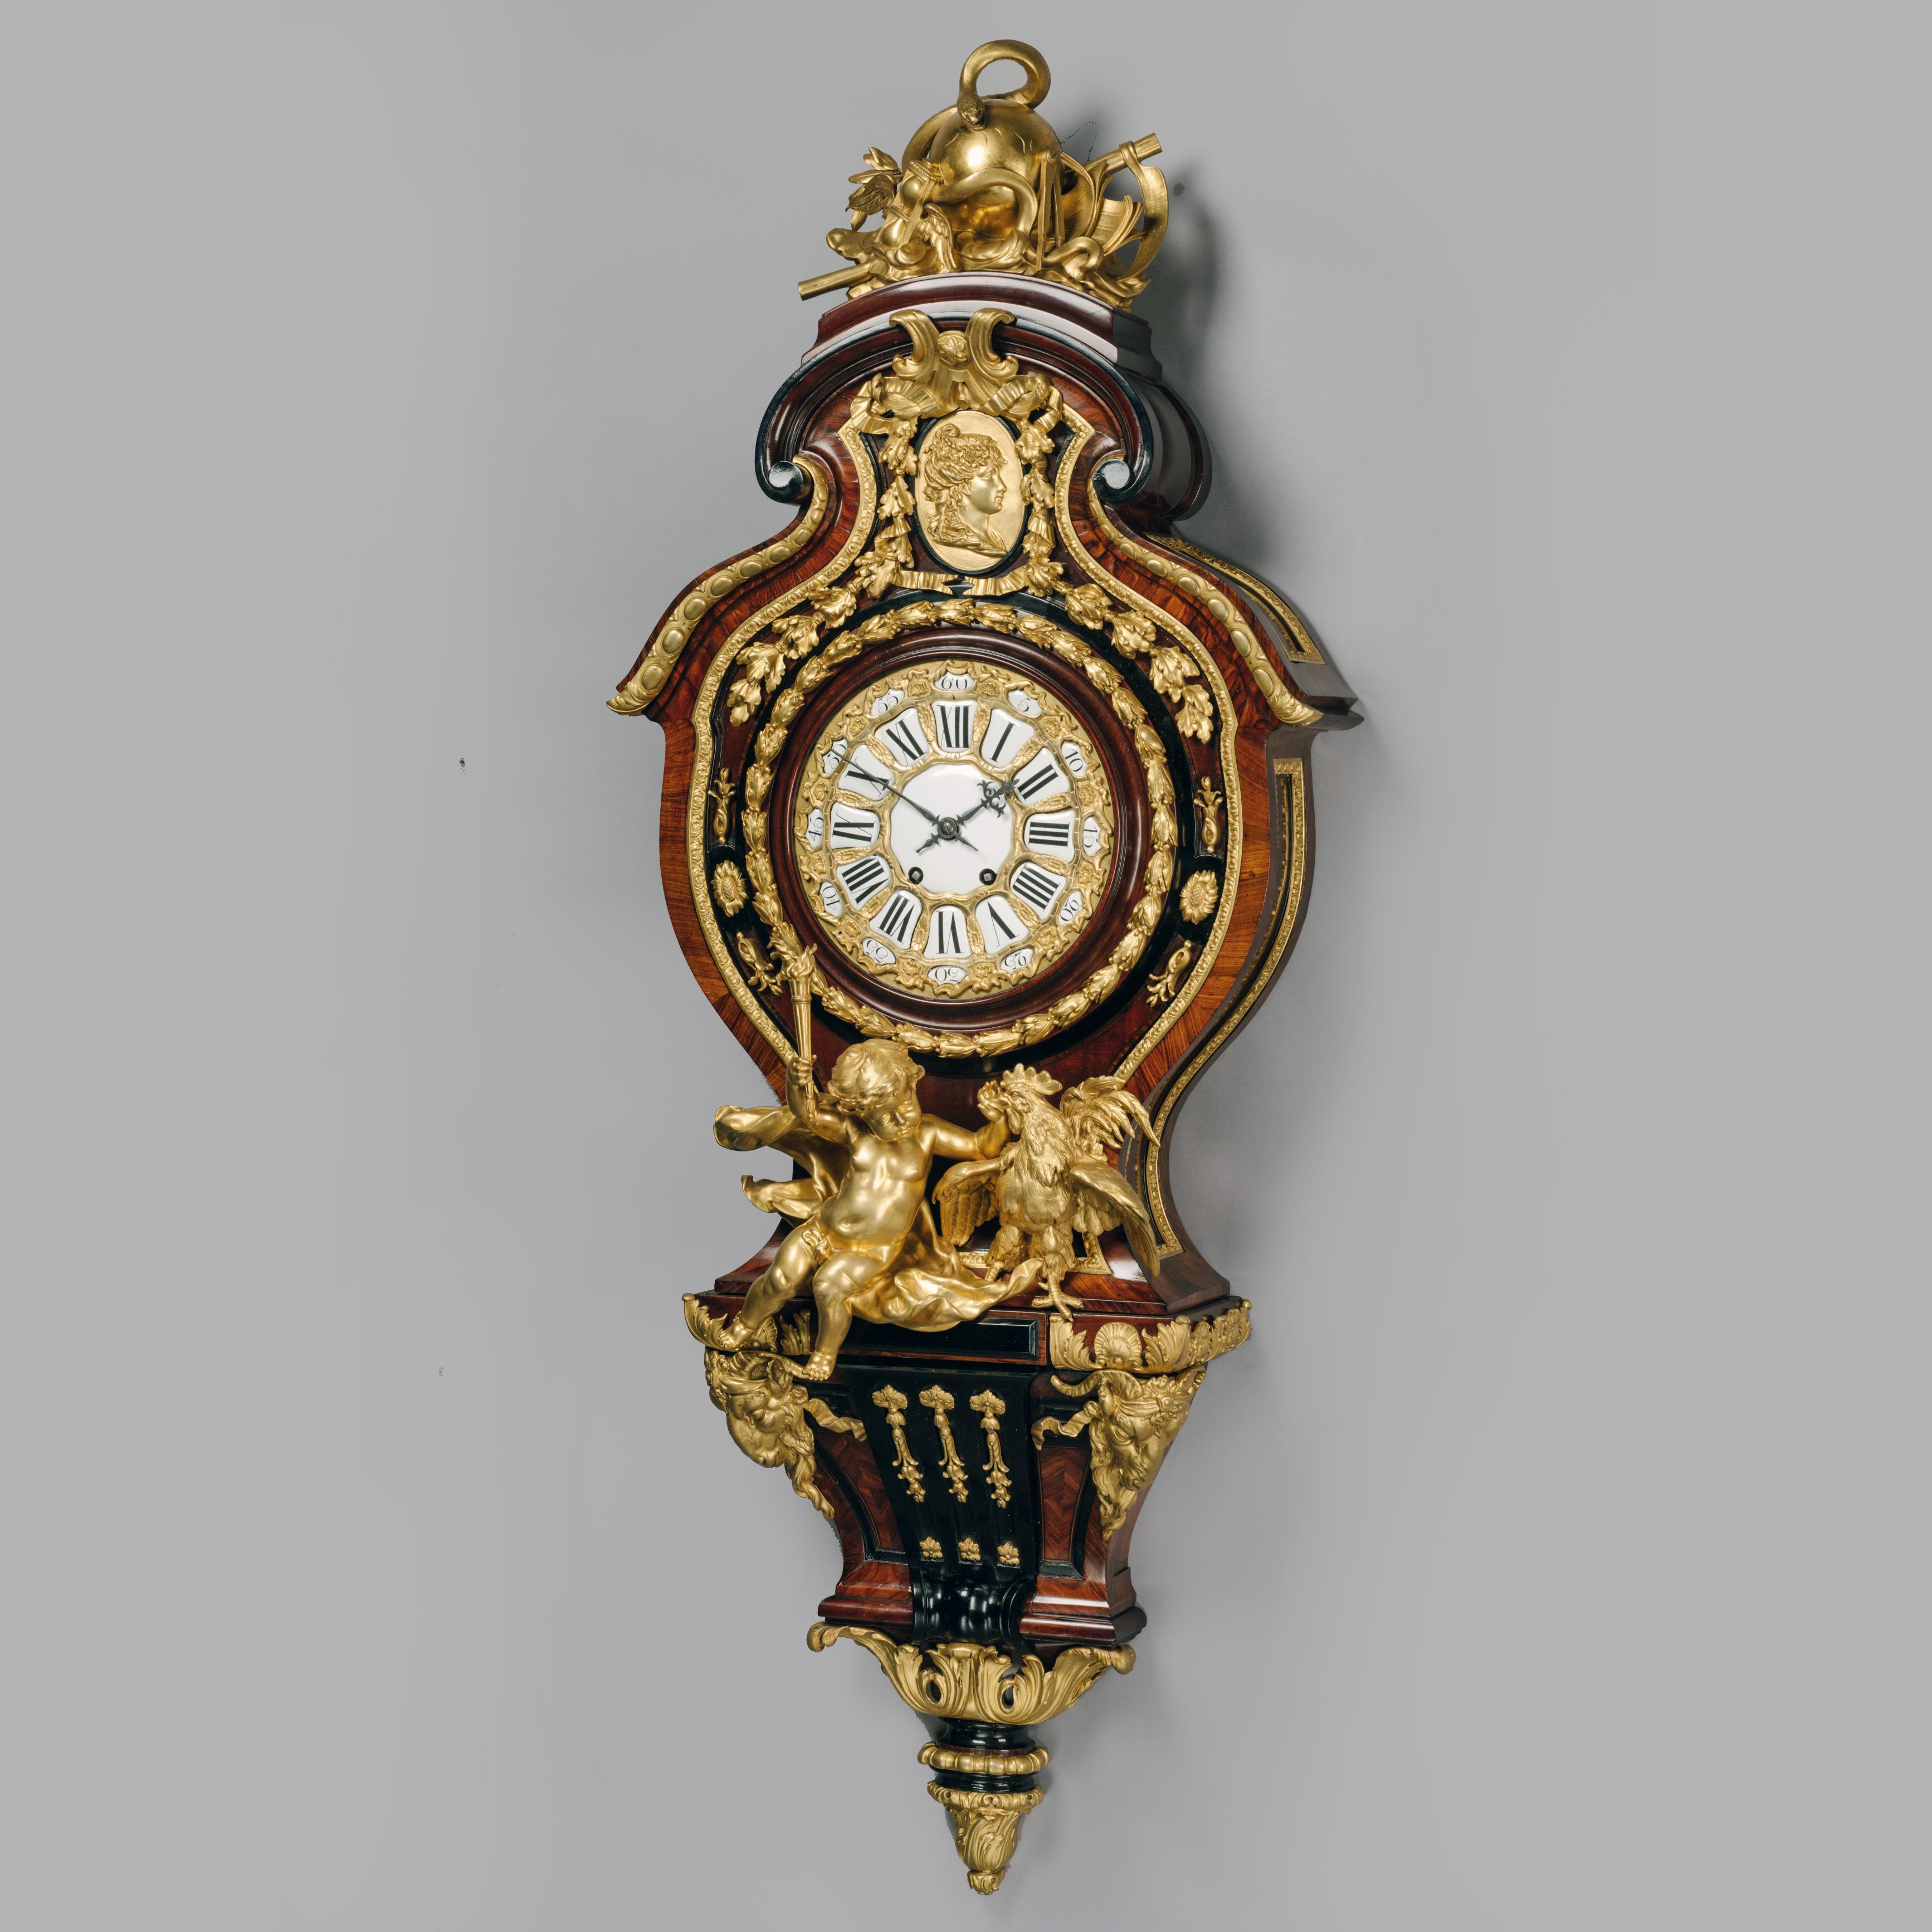 Importante y rarísimo Gran Reloj de Cartel Figurado, según diseño de Gilles-Marie Oppenord. 

De grandes proporciones y calidad excepcional, este raro reloj de cartel es un dibujo del siglo XVIII de hacia 1710 de Gilles-Marie Oppenord (1685-1742),